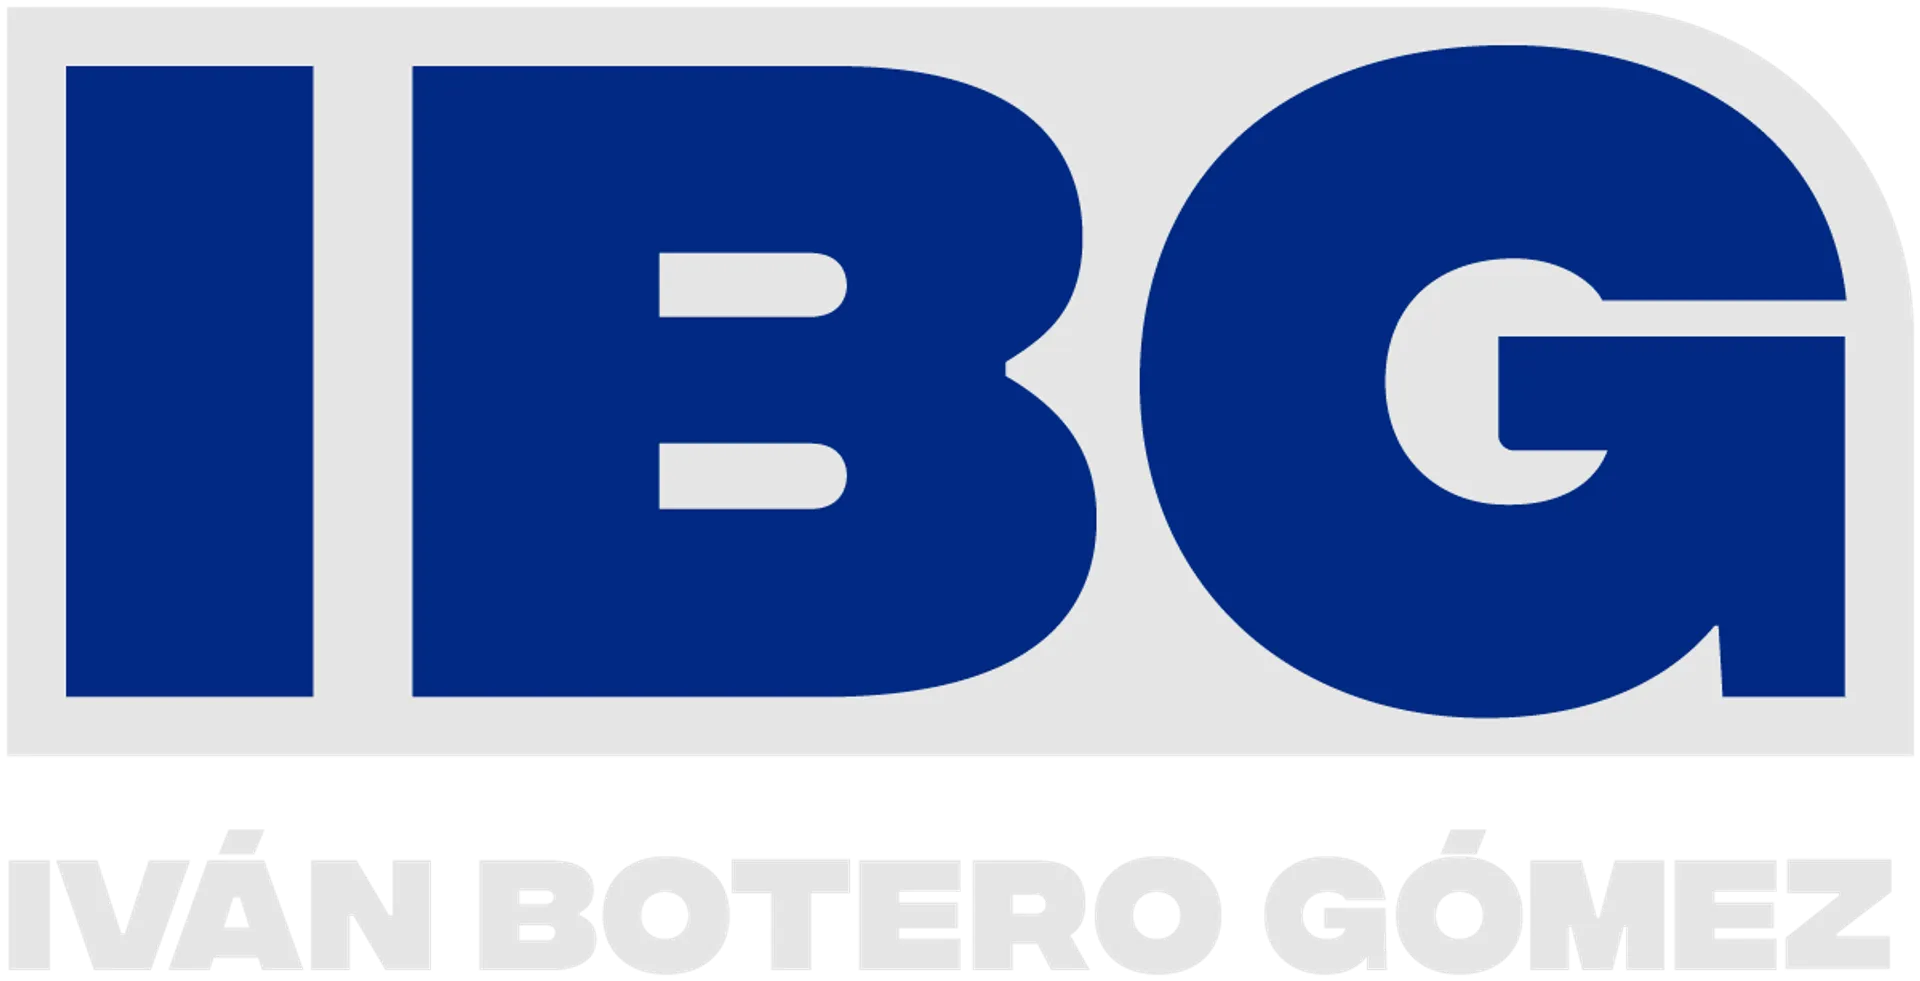 IBG logo